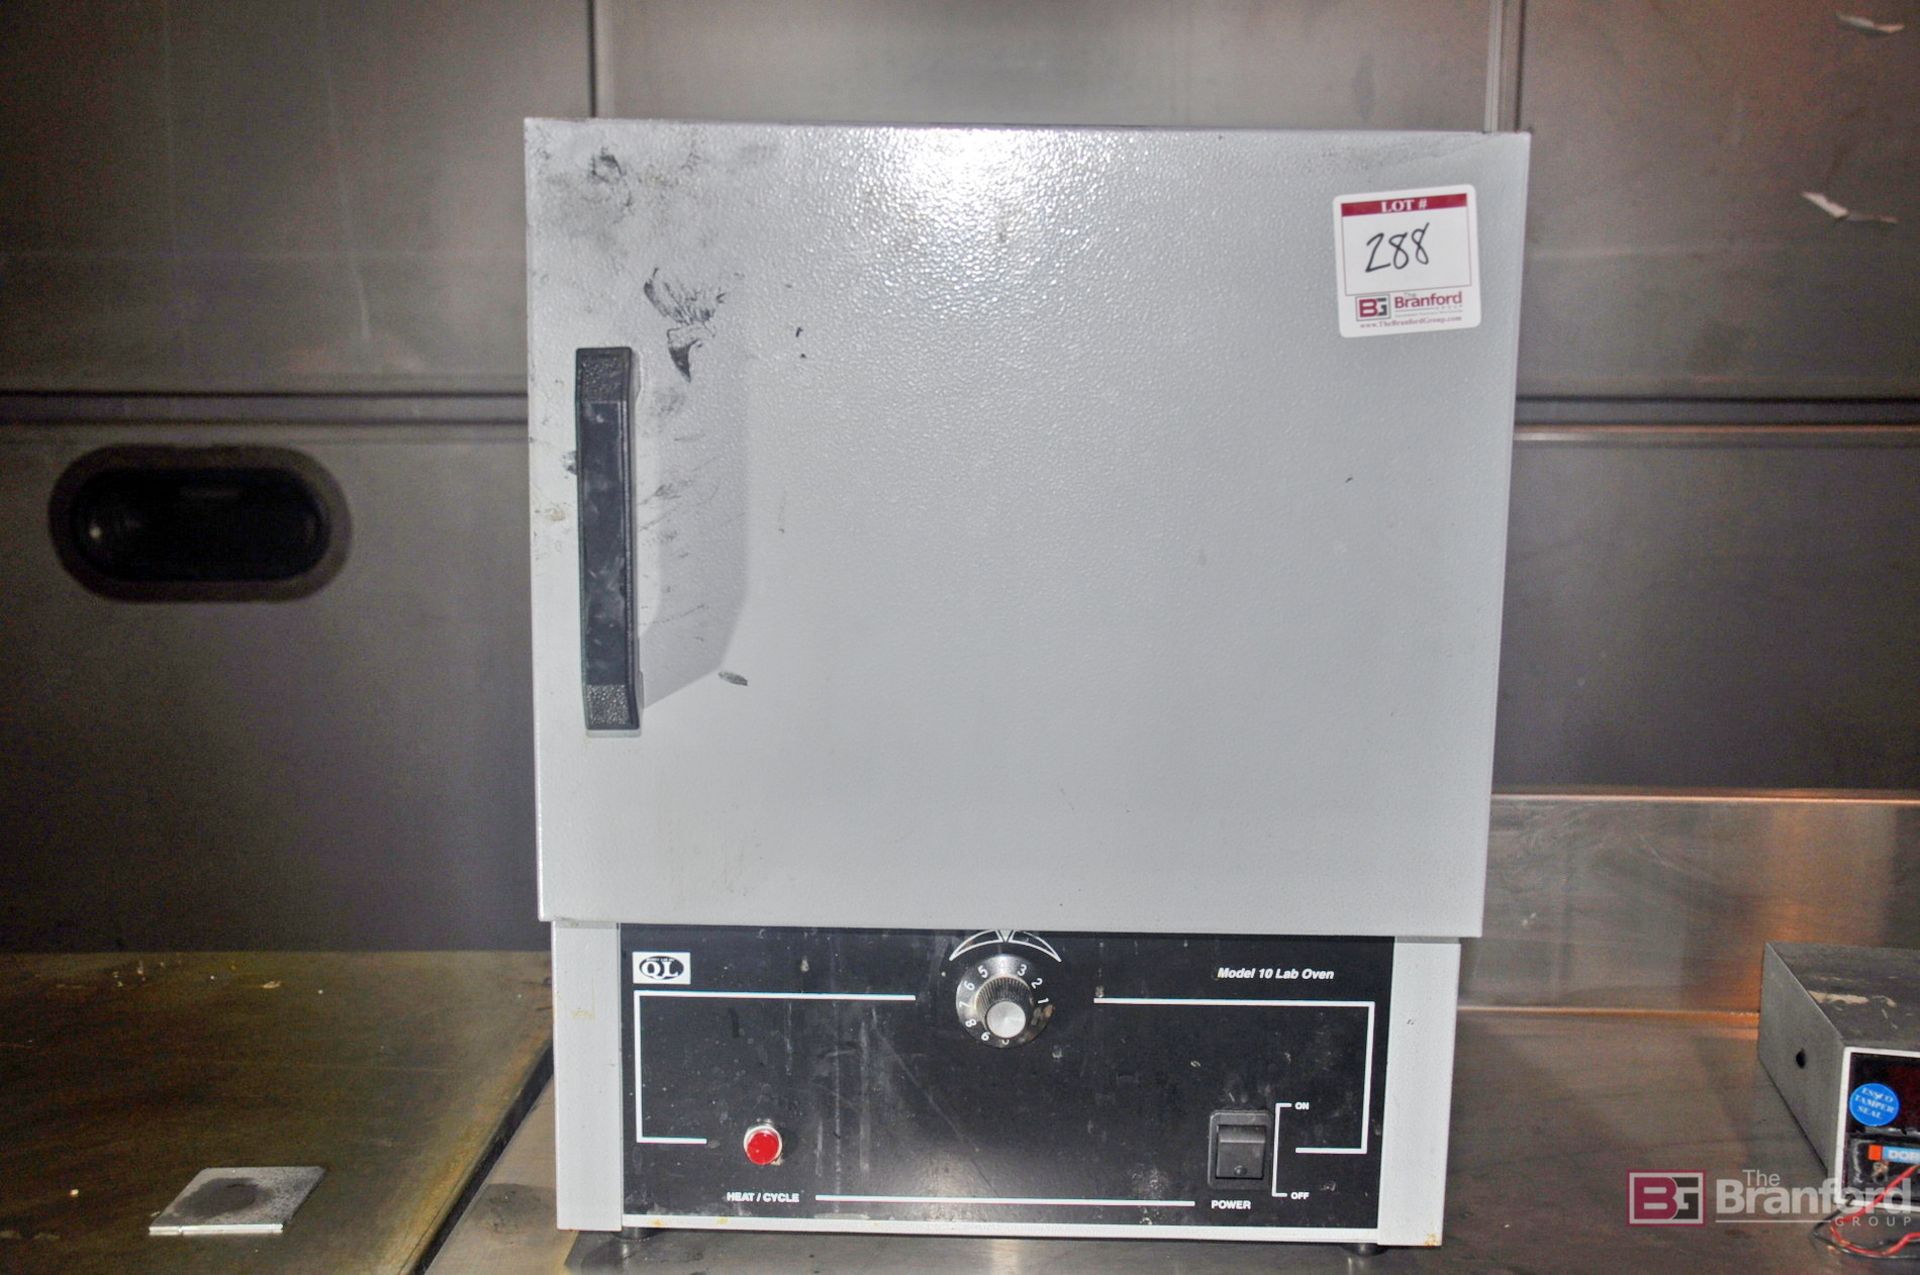 QL model 10 lab oven